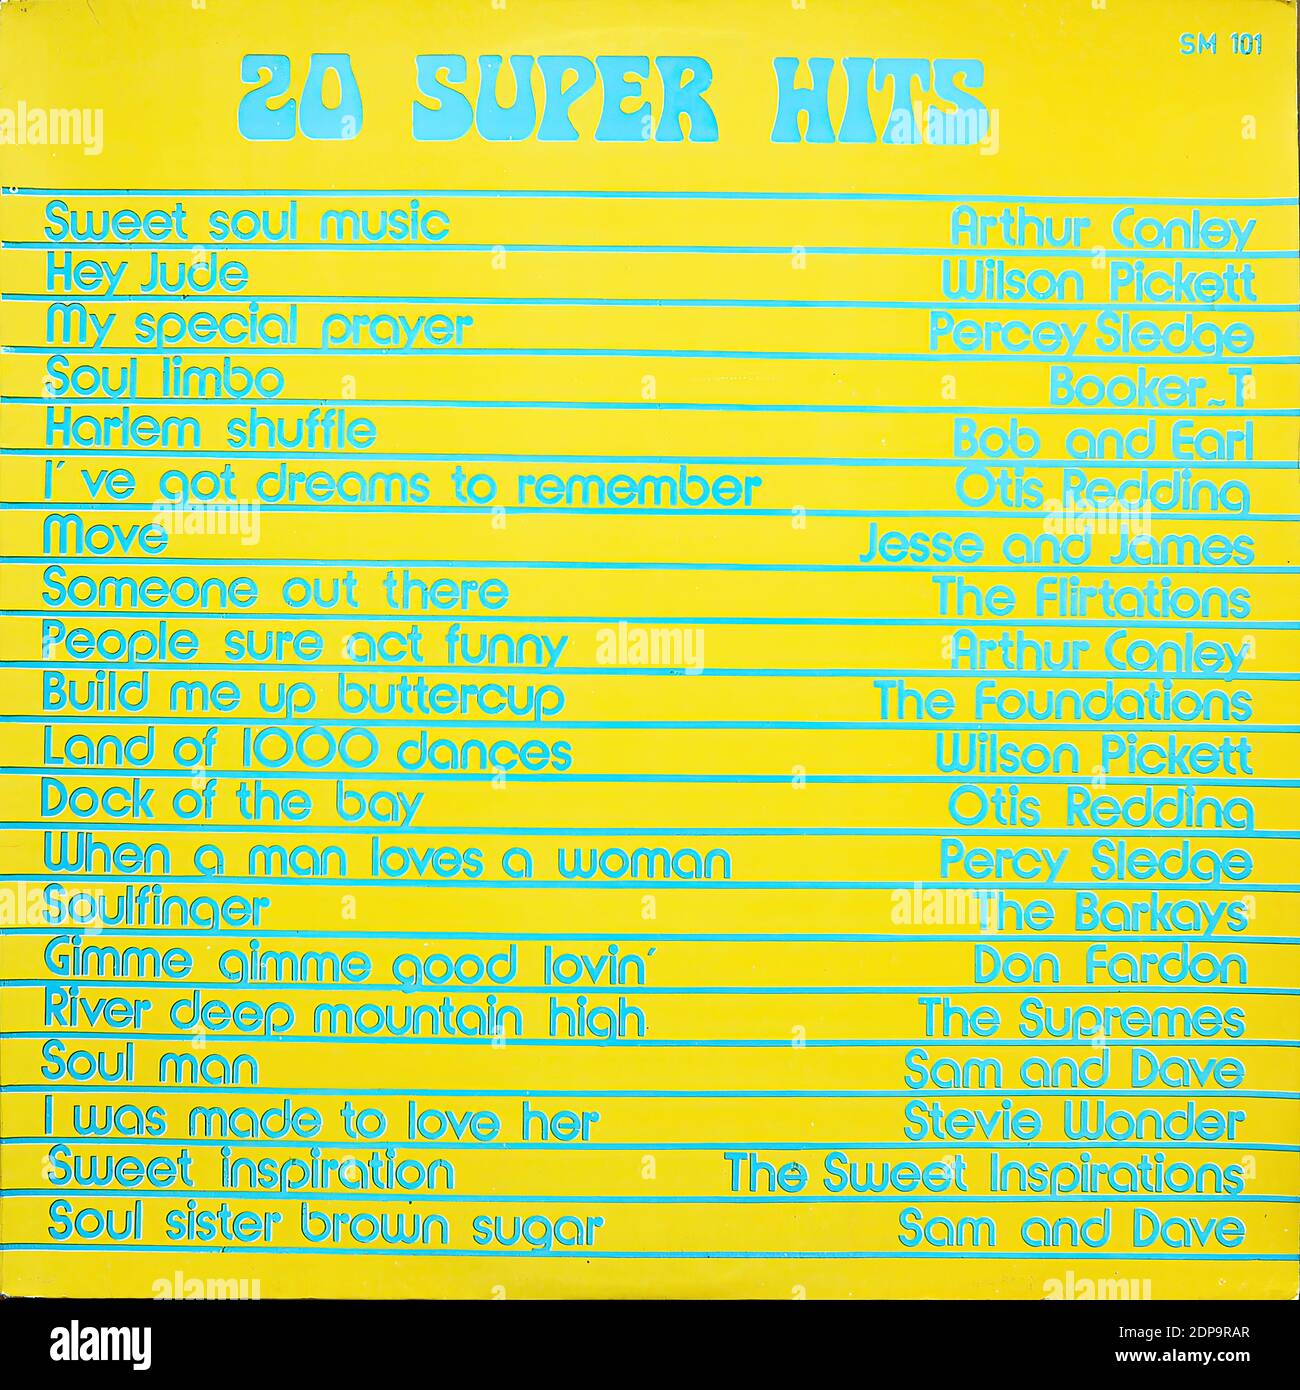 Soul Music - 20 Super Hits, SM 101 - Vintage vinyle album couverture Banque D'Images